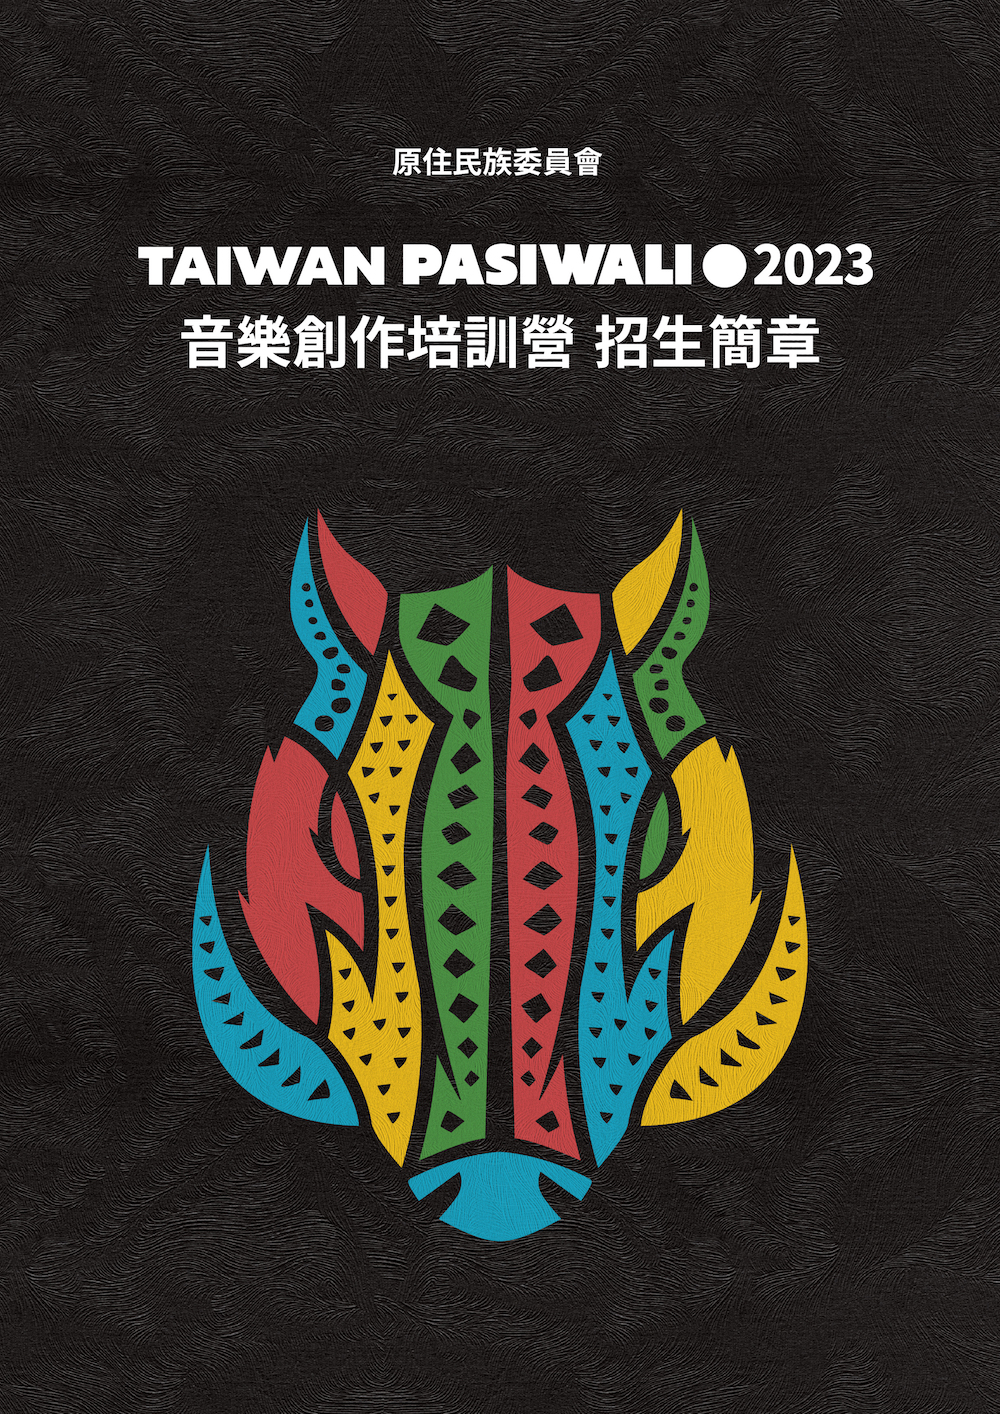 原住民族委員會 2023 Taiwan PASIWALI 音樂創作培訓營 海報